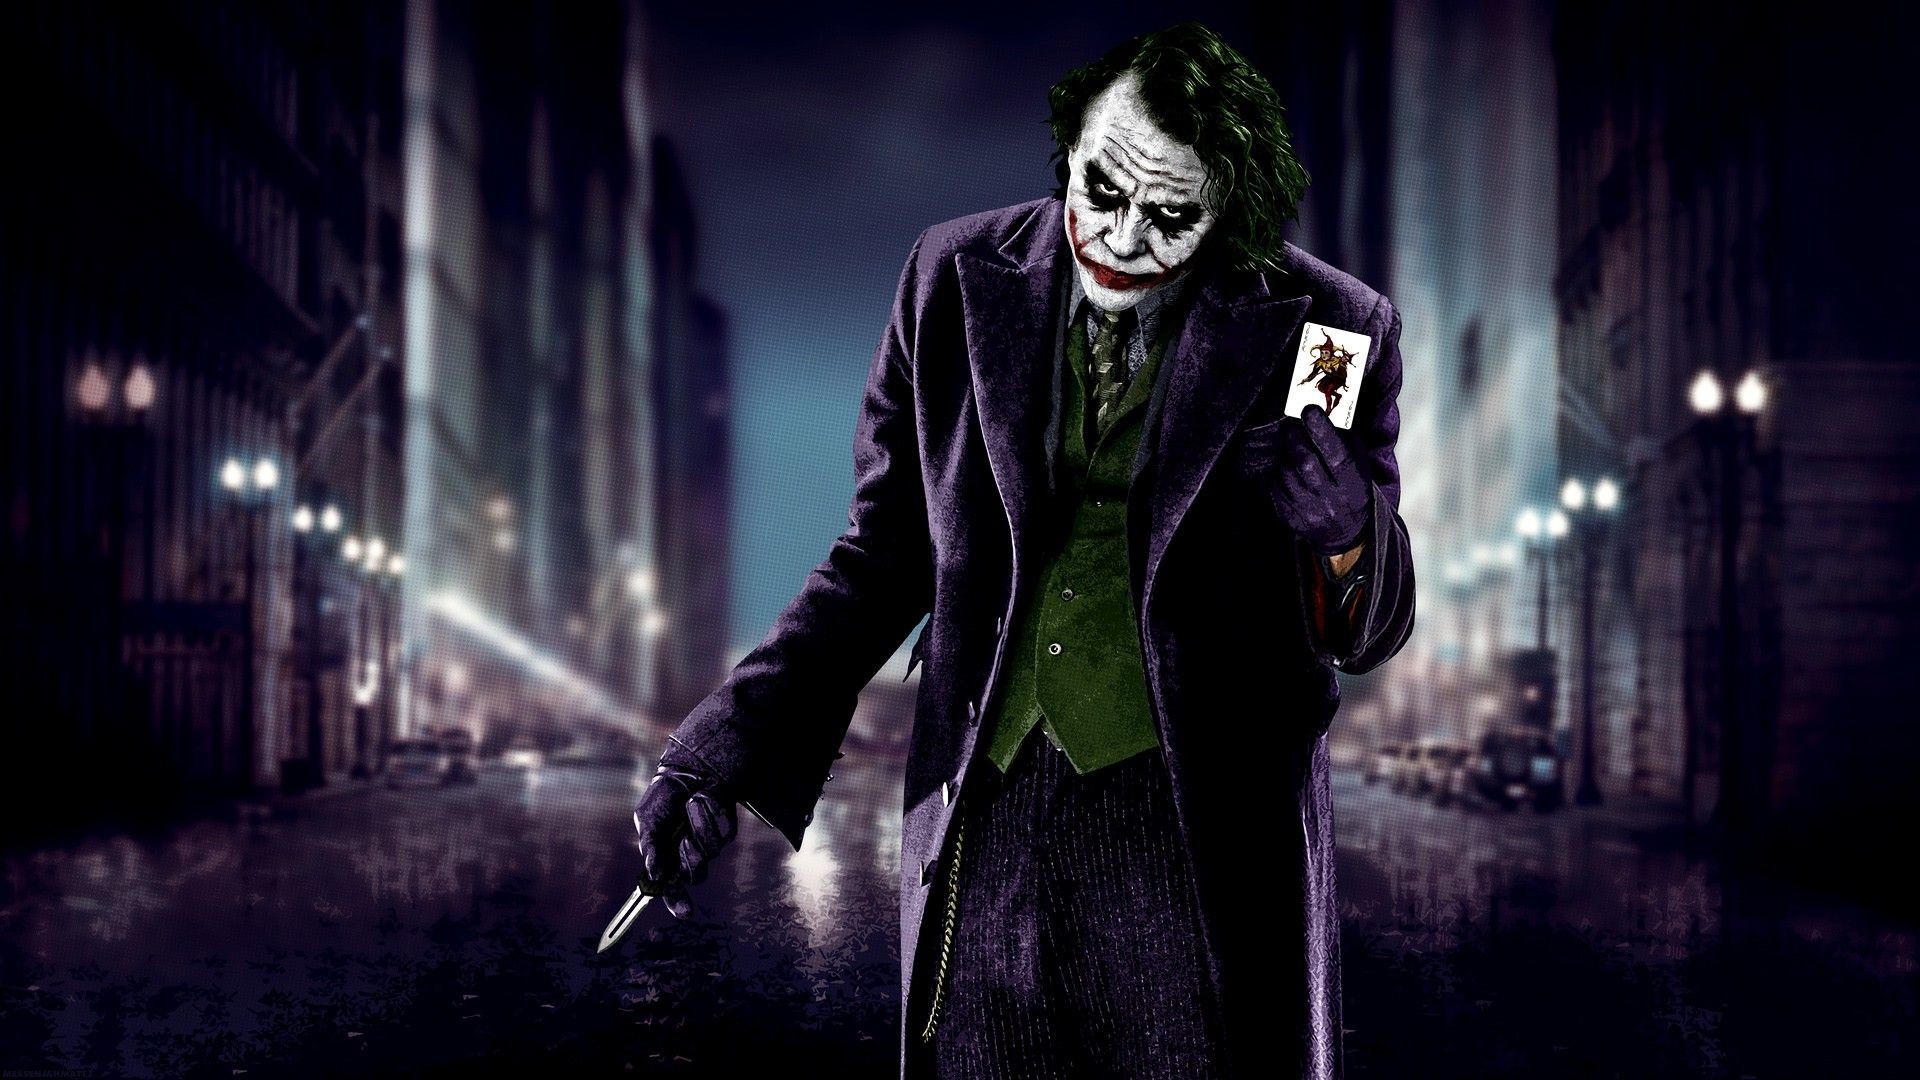 1920x1080 #Heath Ledger, #knife, #cards, #The Dark Knight, #Batman, #Joker, #city,  #blurred, #MessenjahMatt, #movies, wallpaper